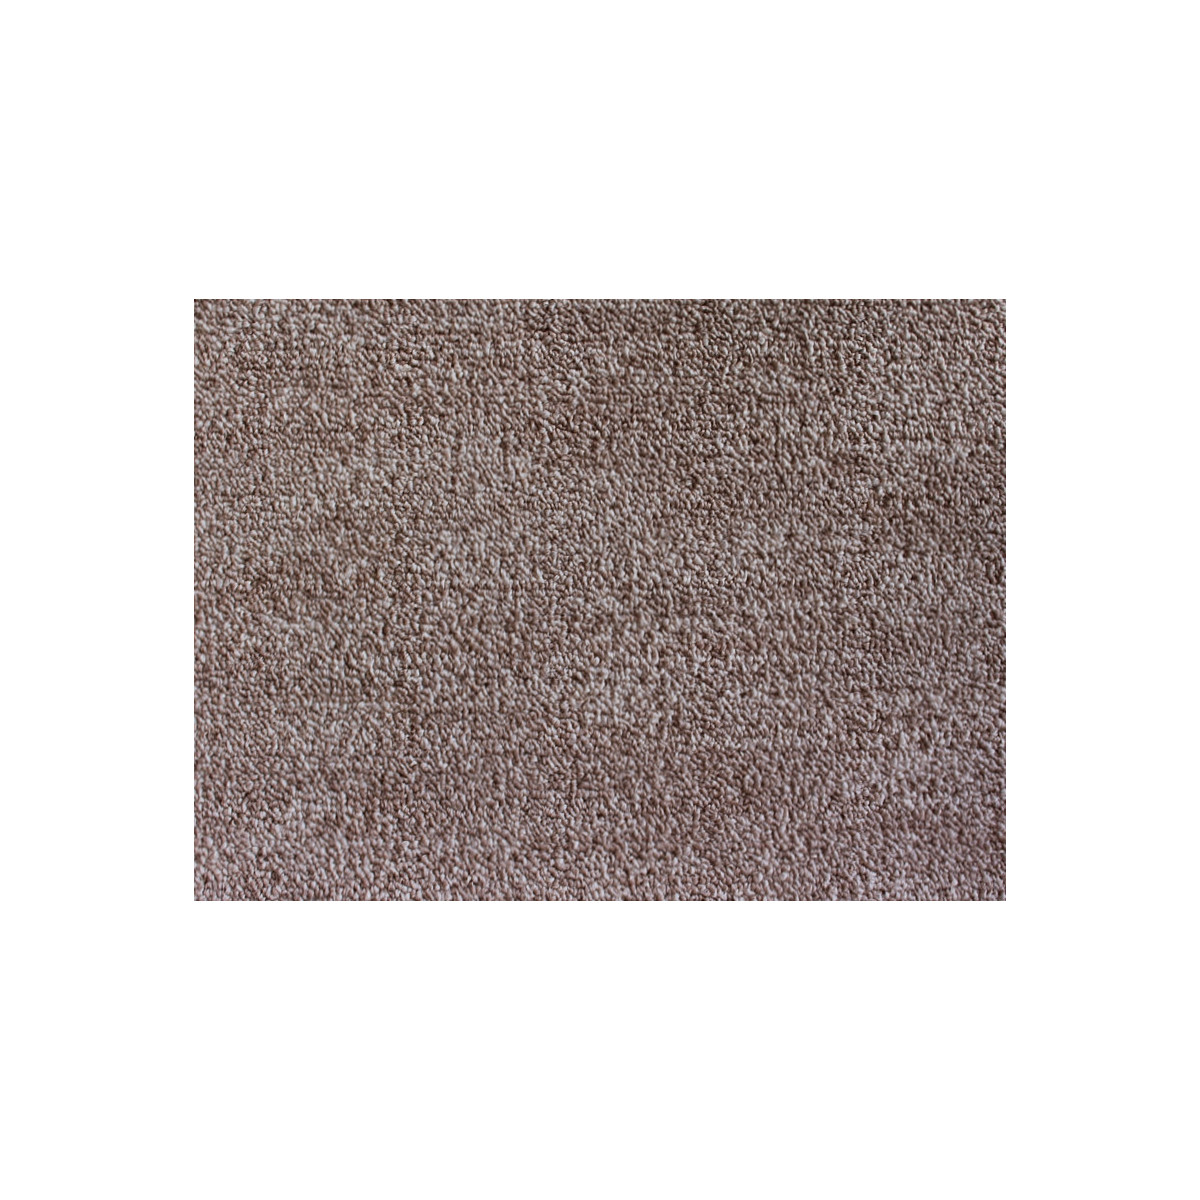 AKCE: 120x200 cm Metrážový koberec Leon 11344 Hnědý